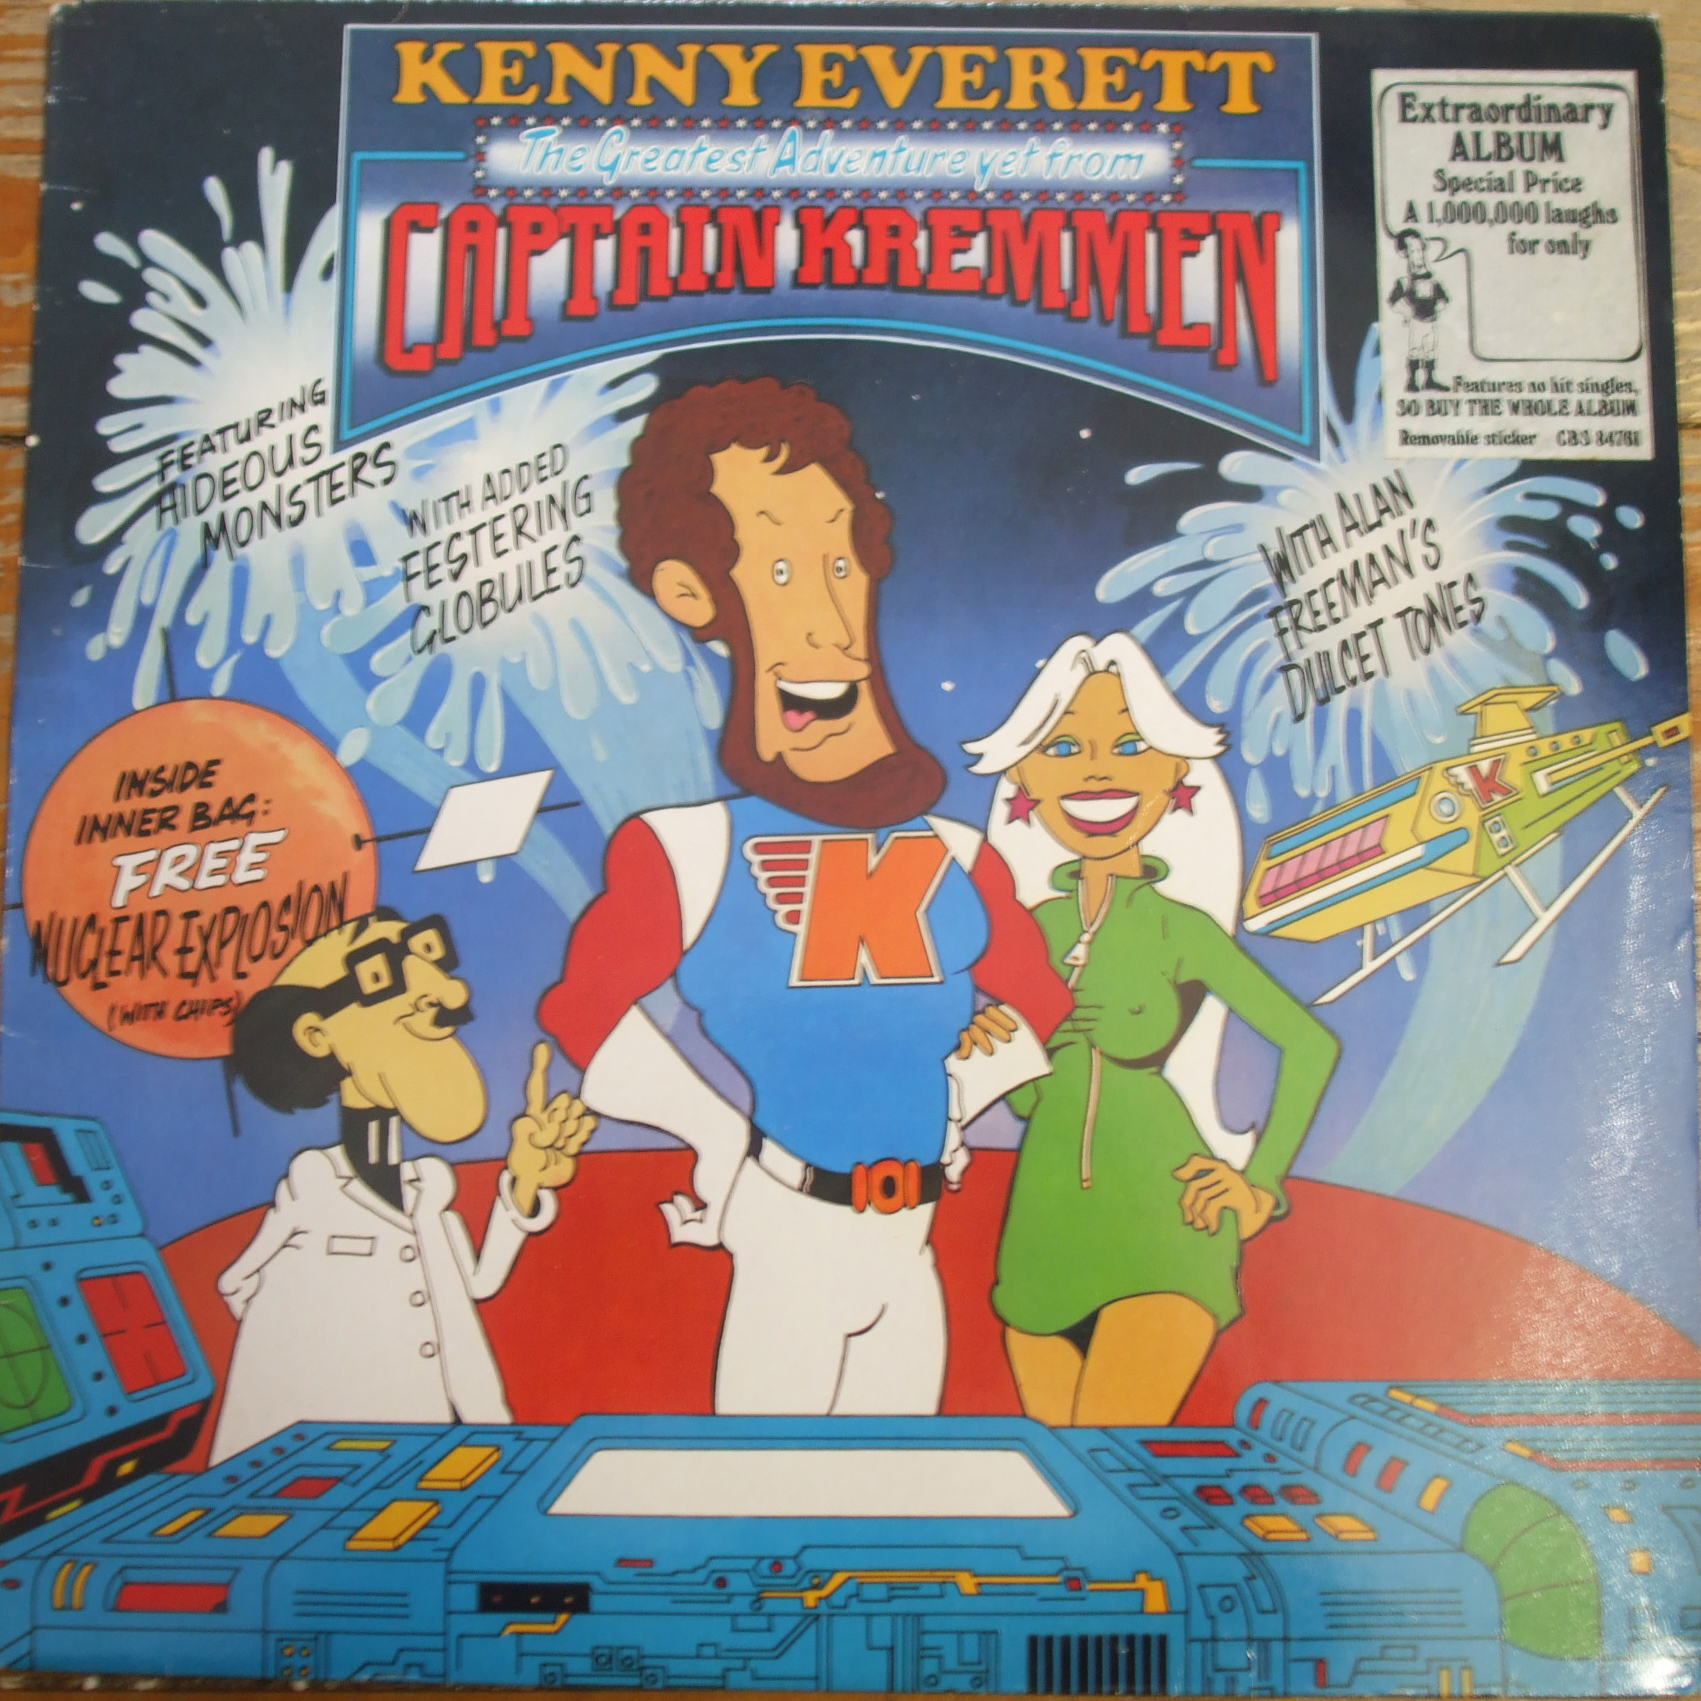 CBS 84761 The Greatest Adventure yet from Captain Kremmen / Kenny Everett